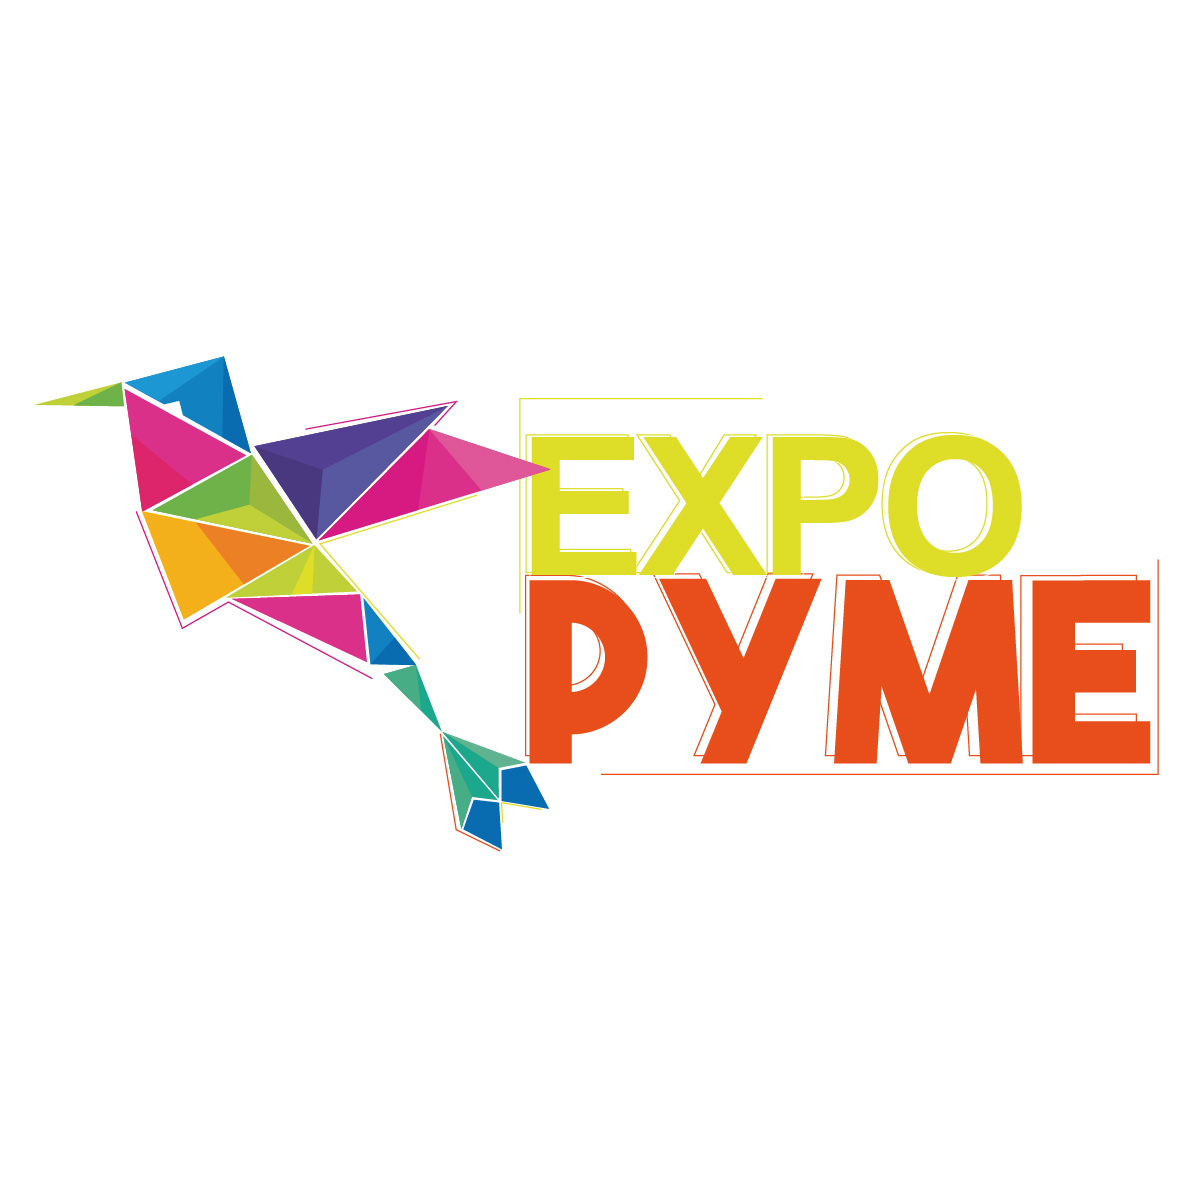 Expo Pyme